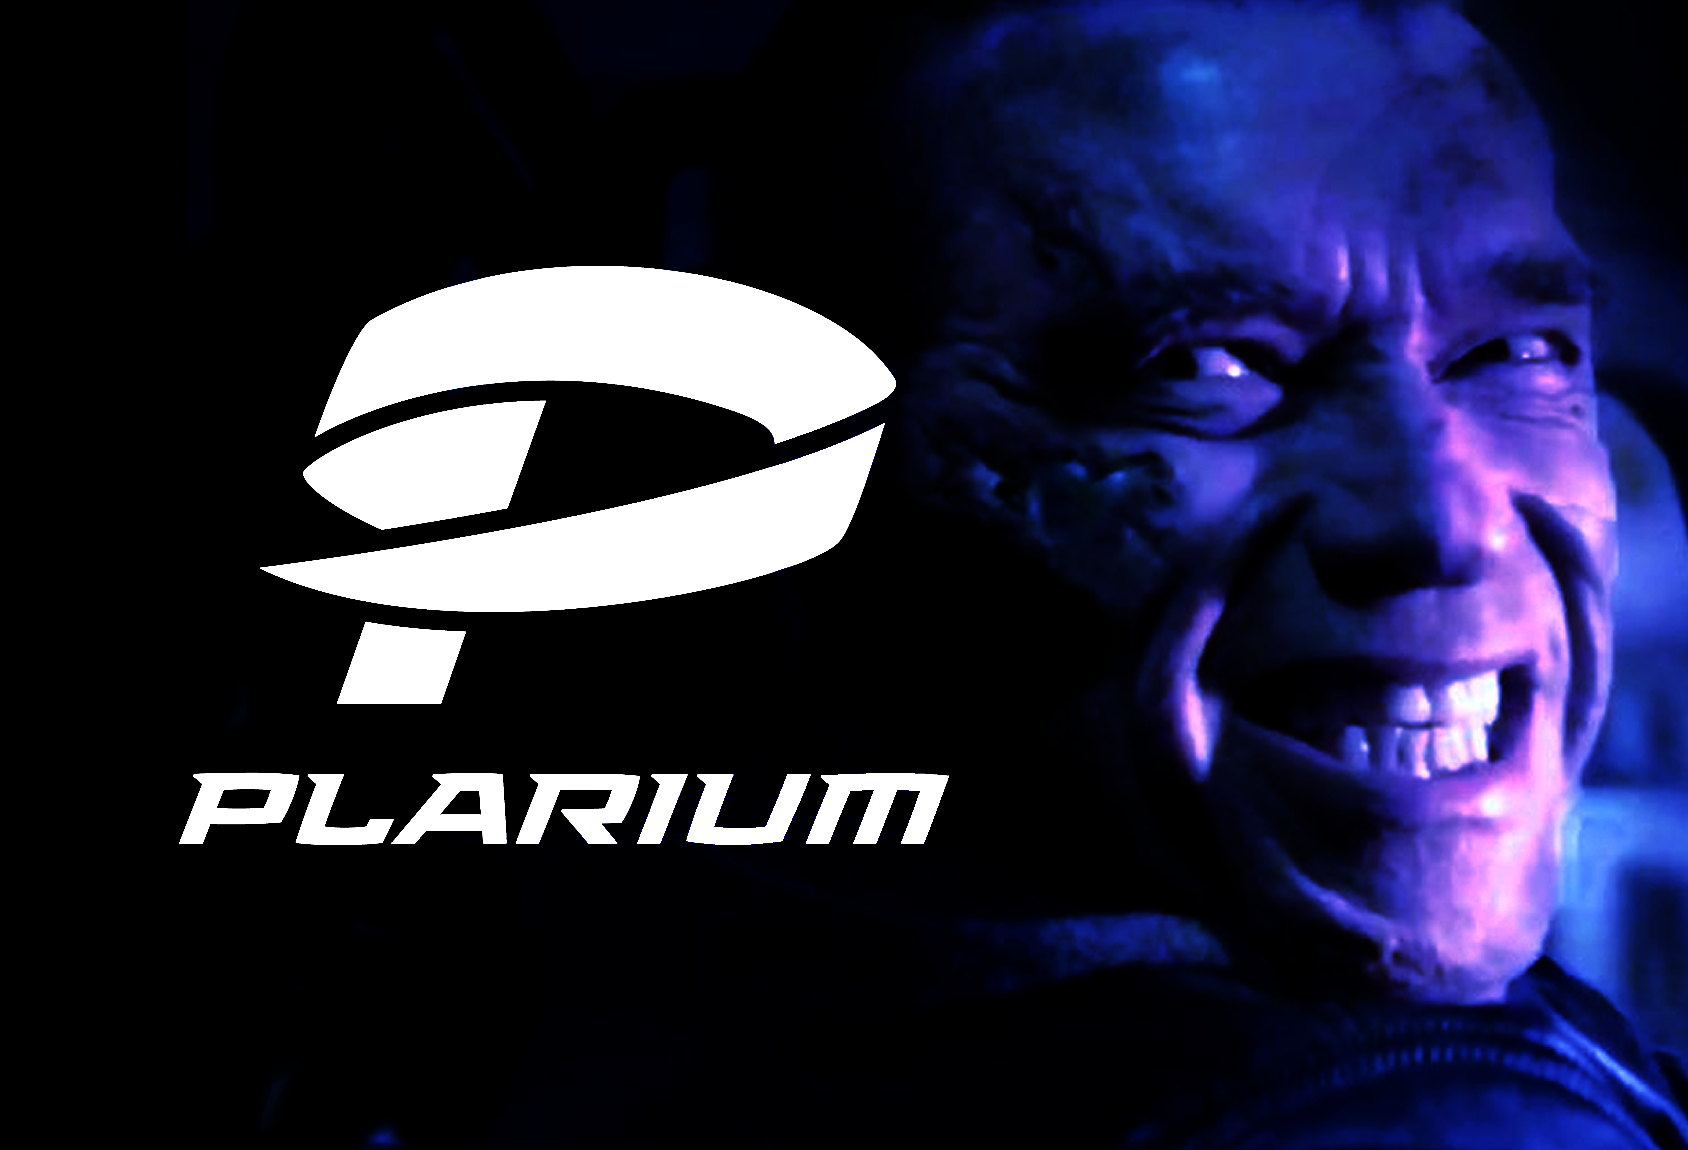 Free Online Multiplayer Games - Plarium